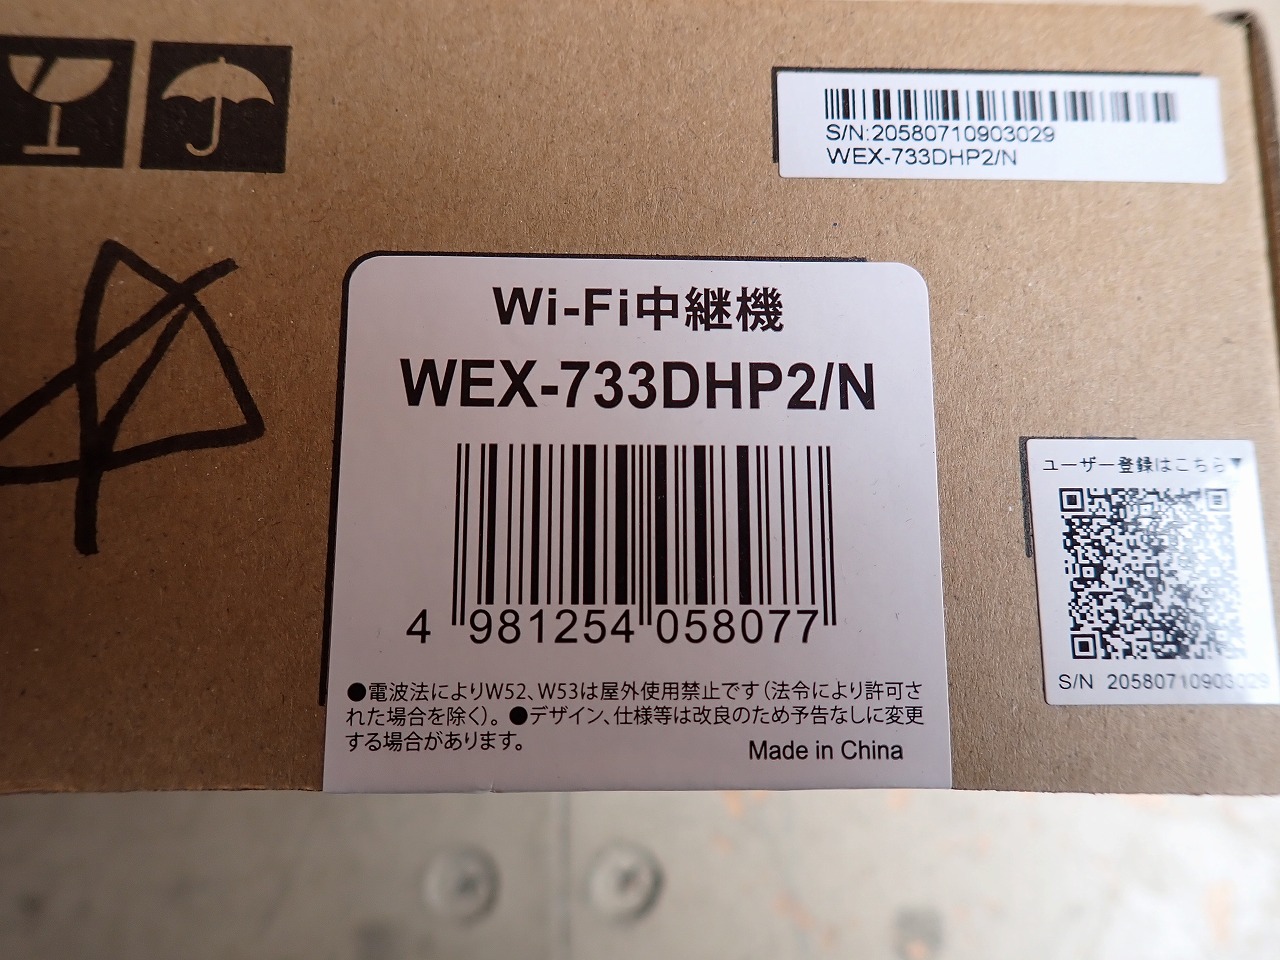 WEX-733DHP2/N